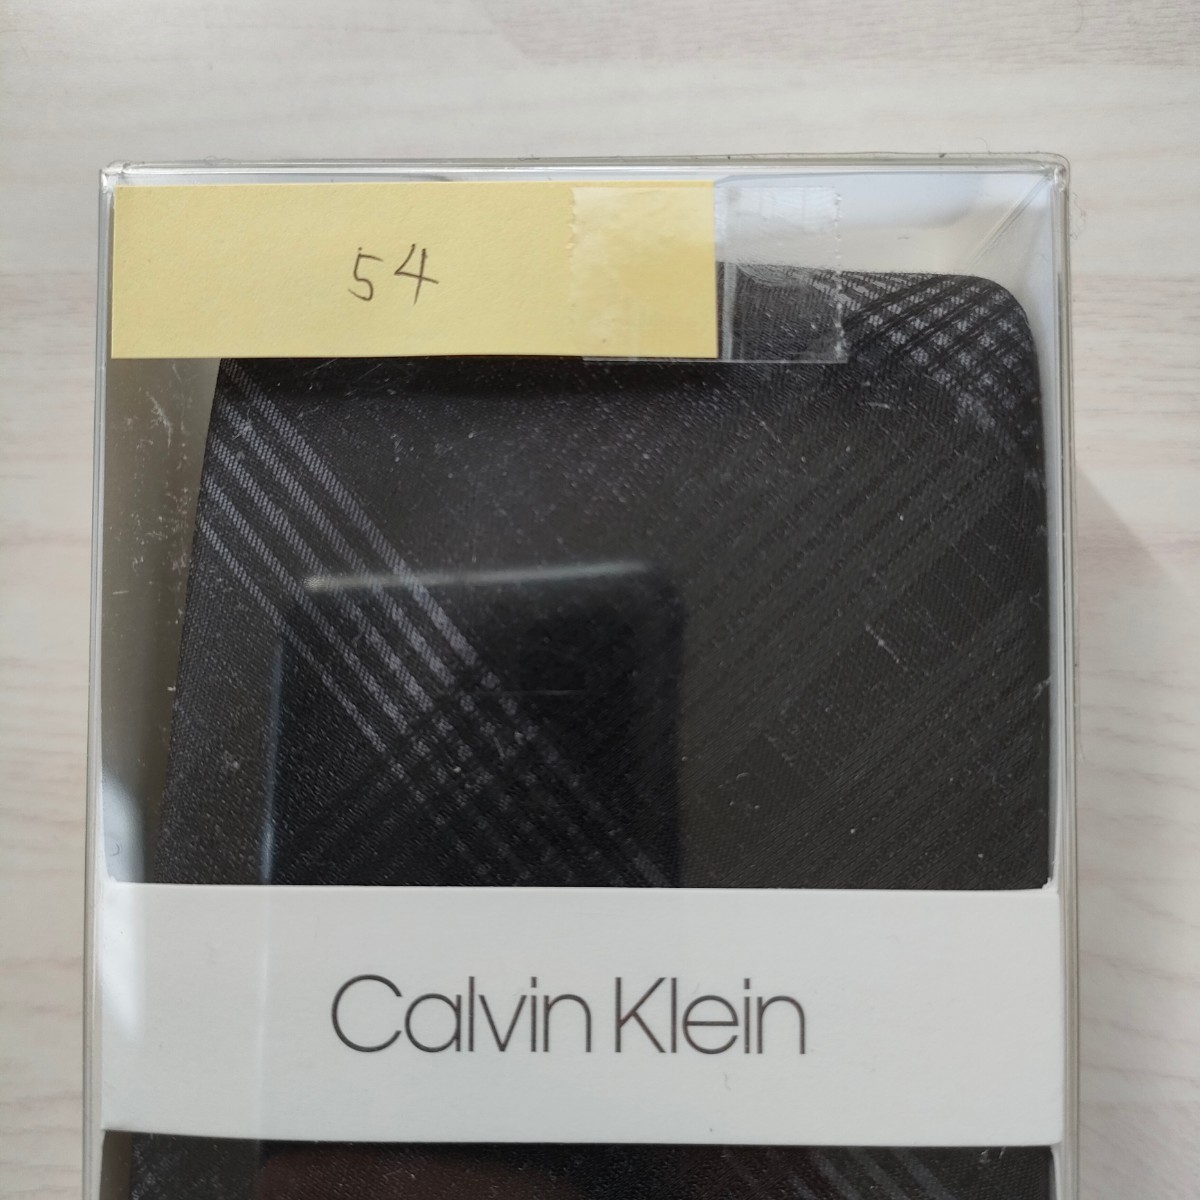  Calvin Klein (Calvin Klein)54 necktie new goods unused box attaching unopened goods accessory box, clear case 